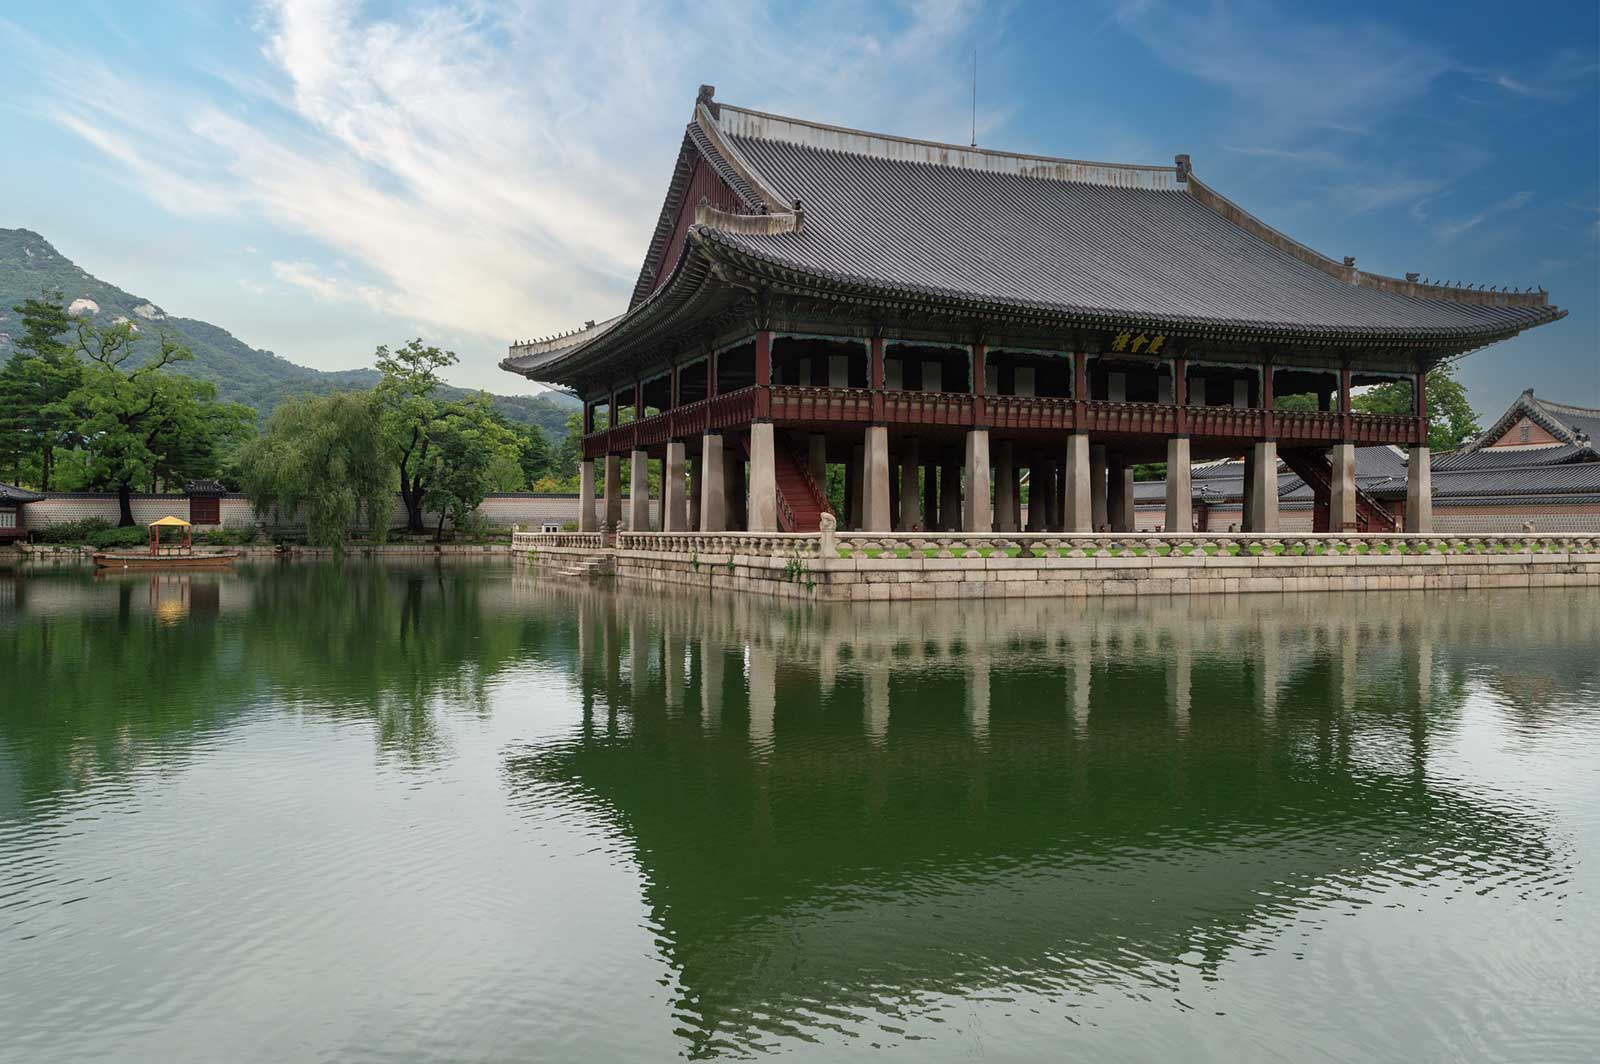 Gyeonghoeru Pavillion